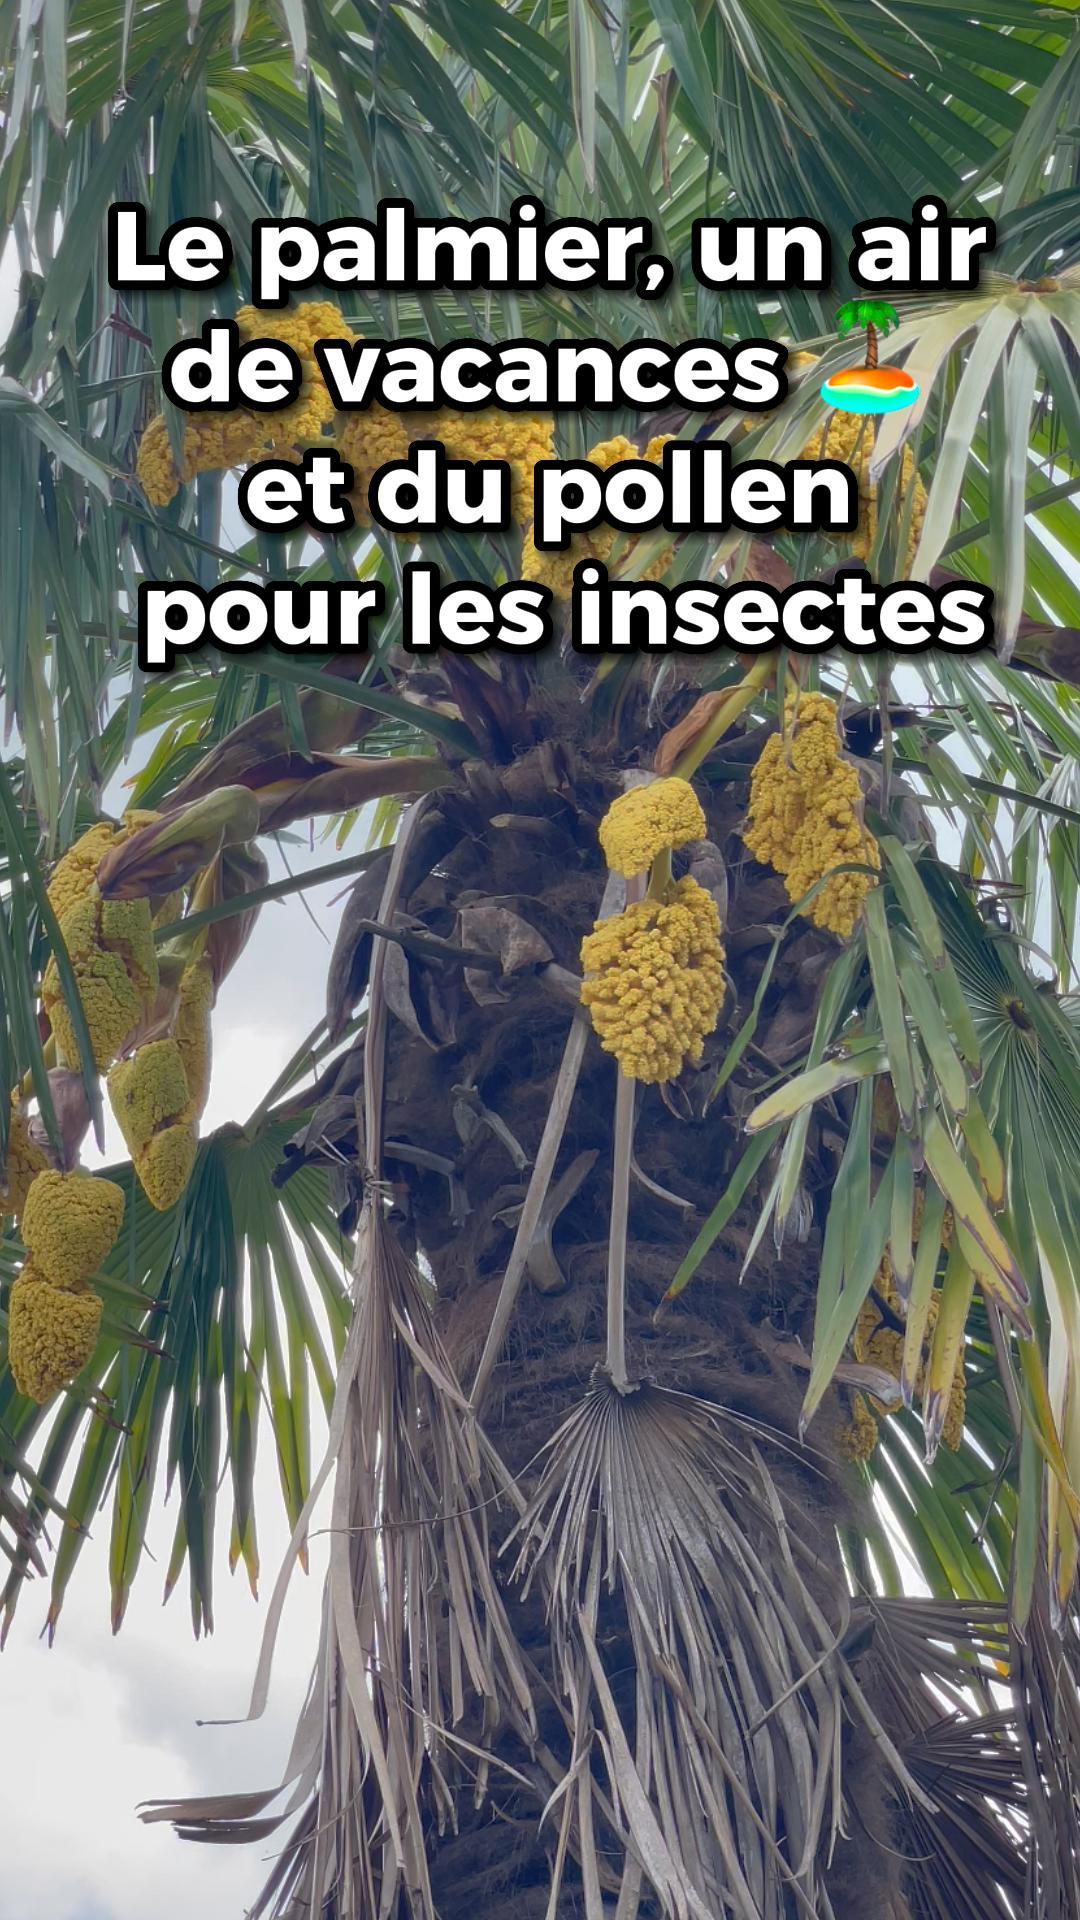 Le palmier, un air de vacances et du pollen pour les abeilles